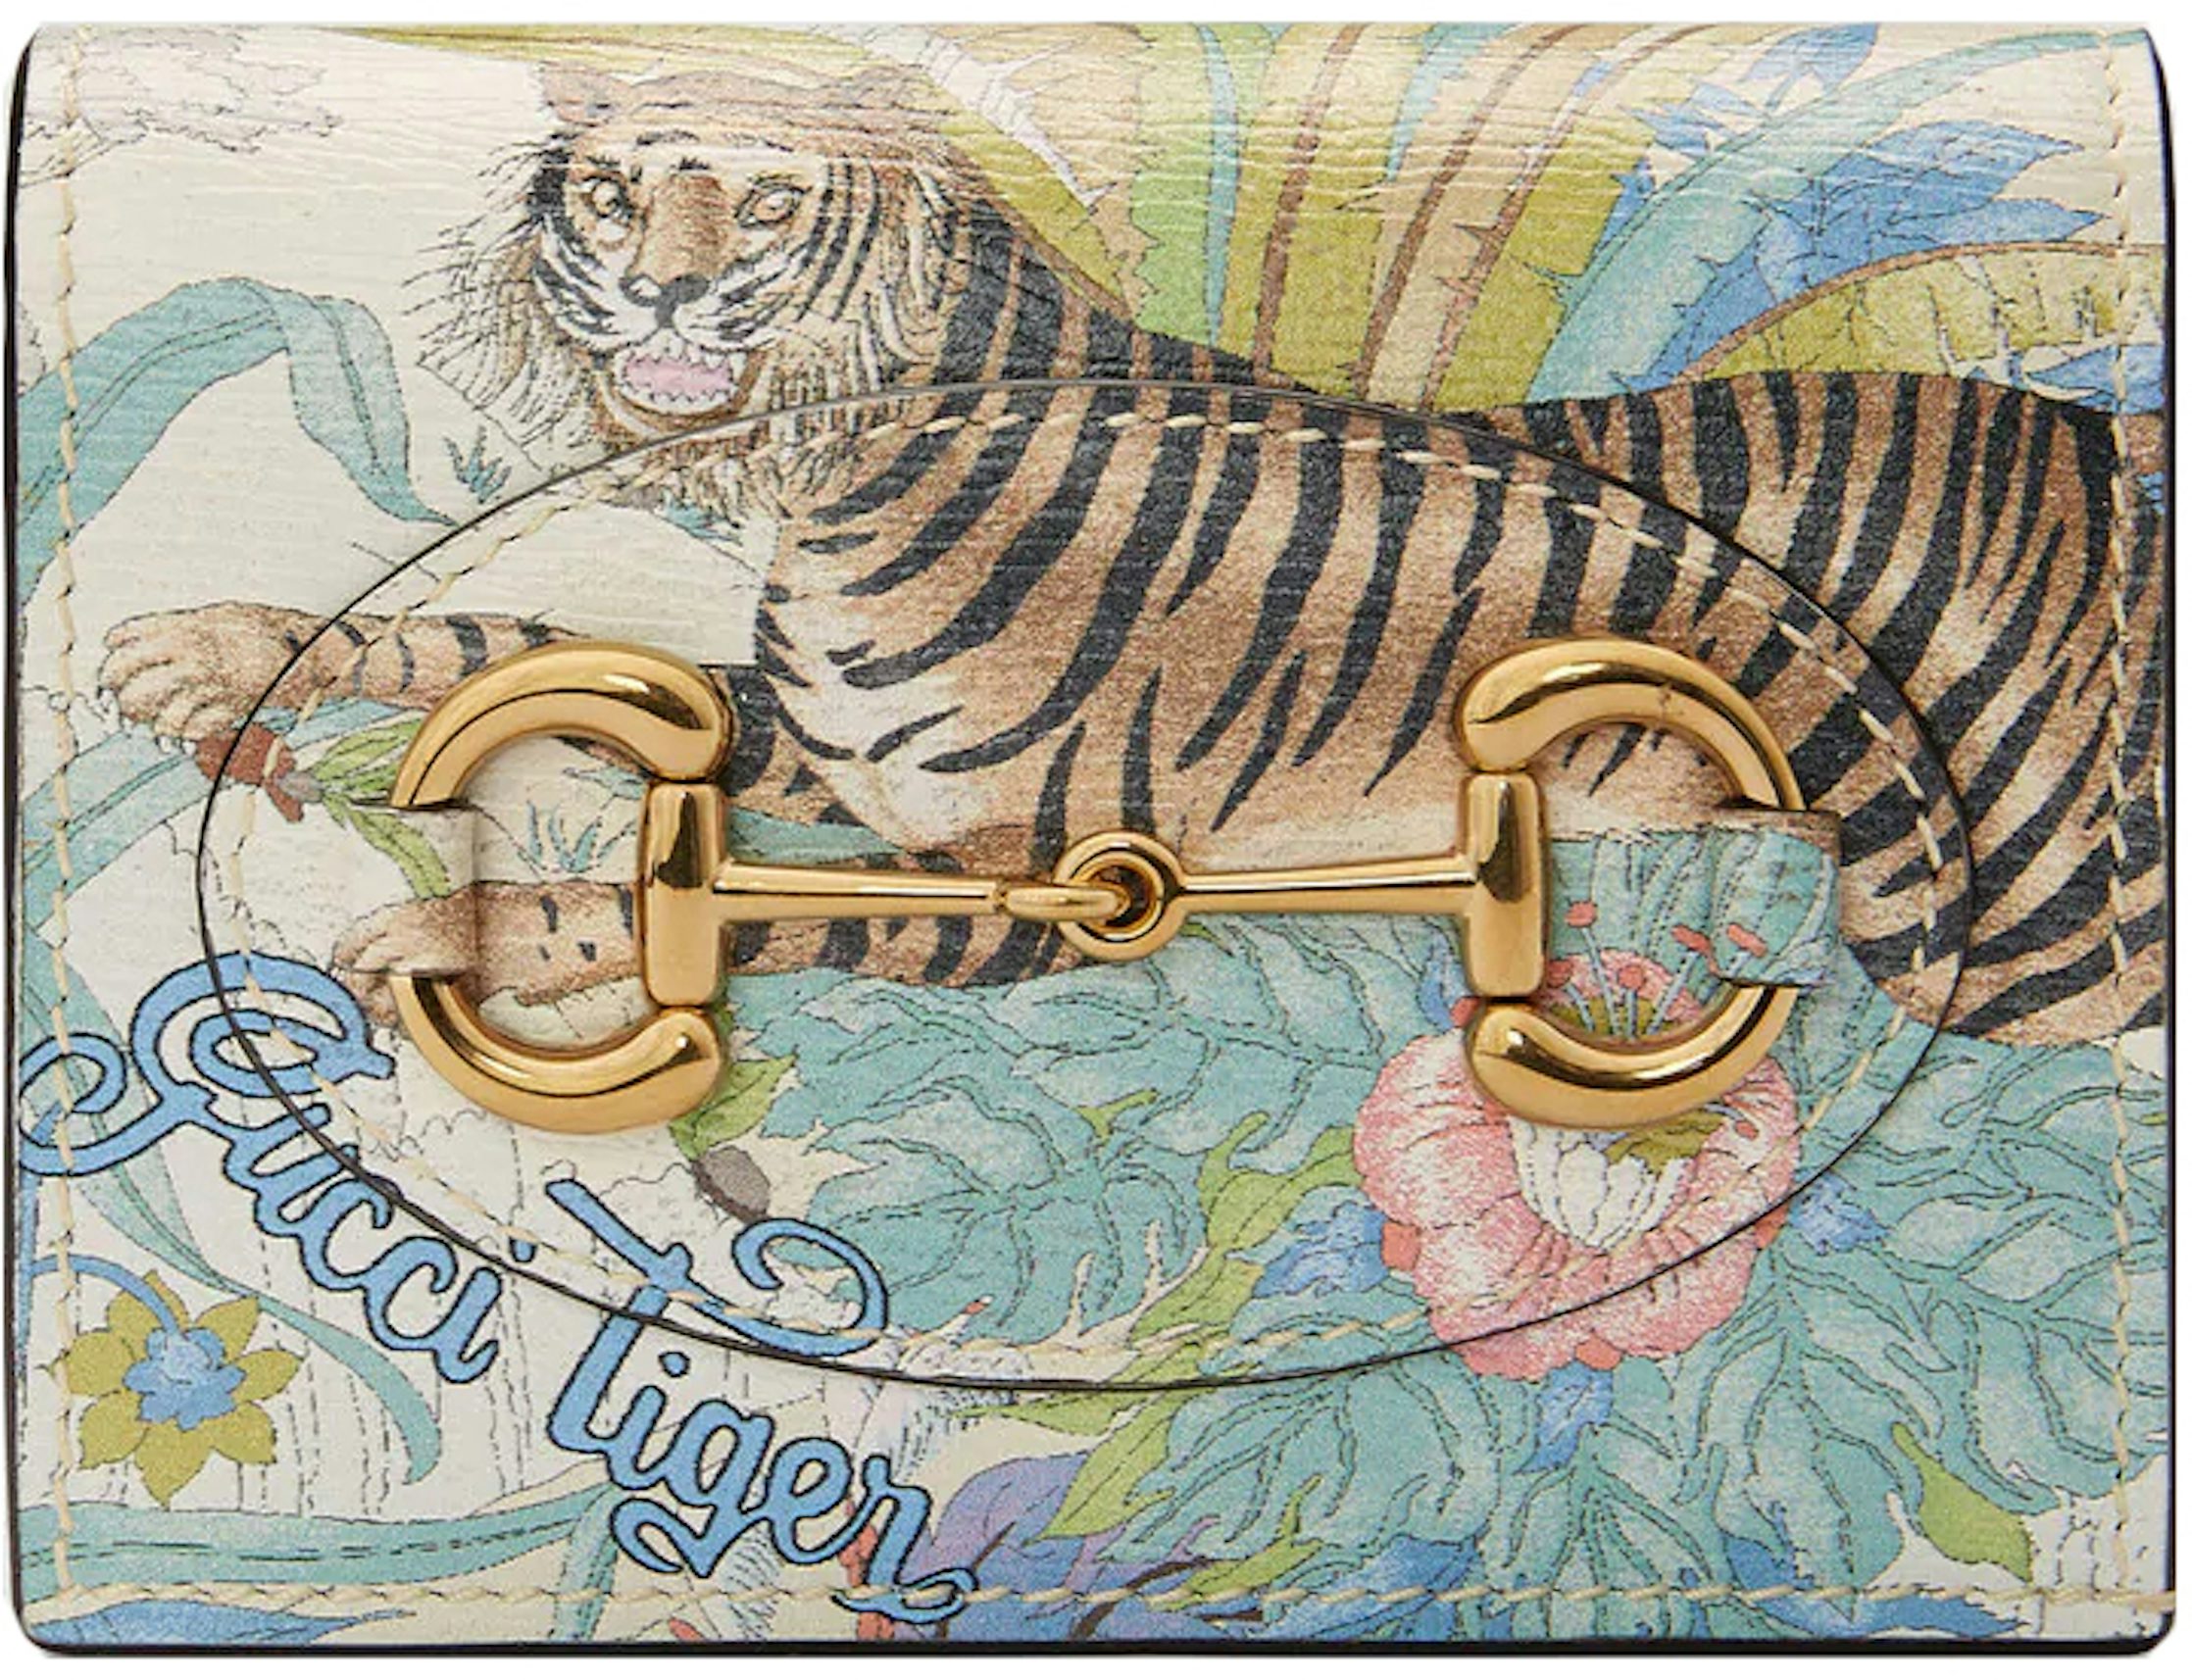 Gucci, Bags, Gucci Card Case Monogram Gg Tiger